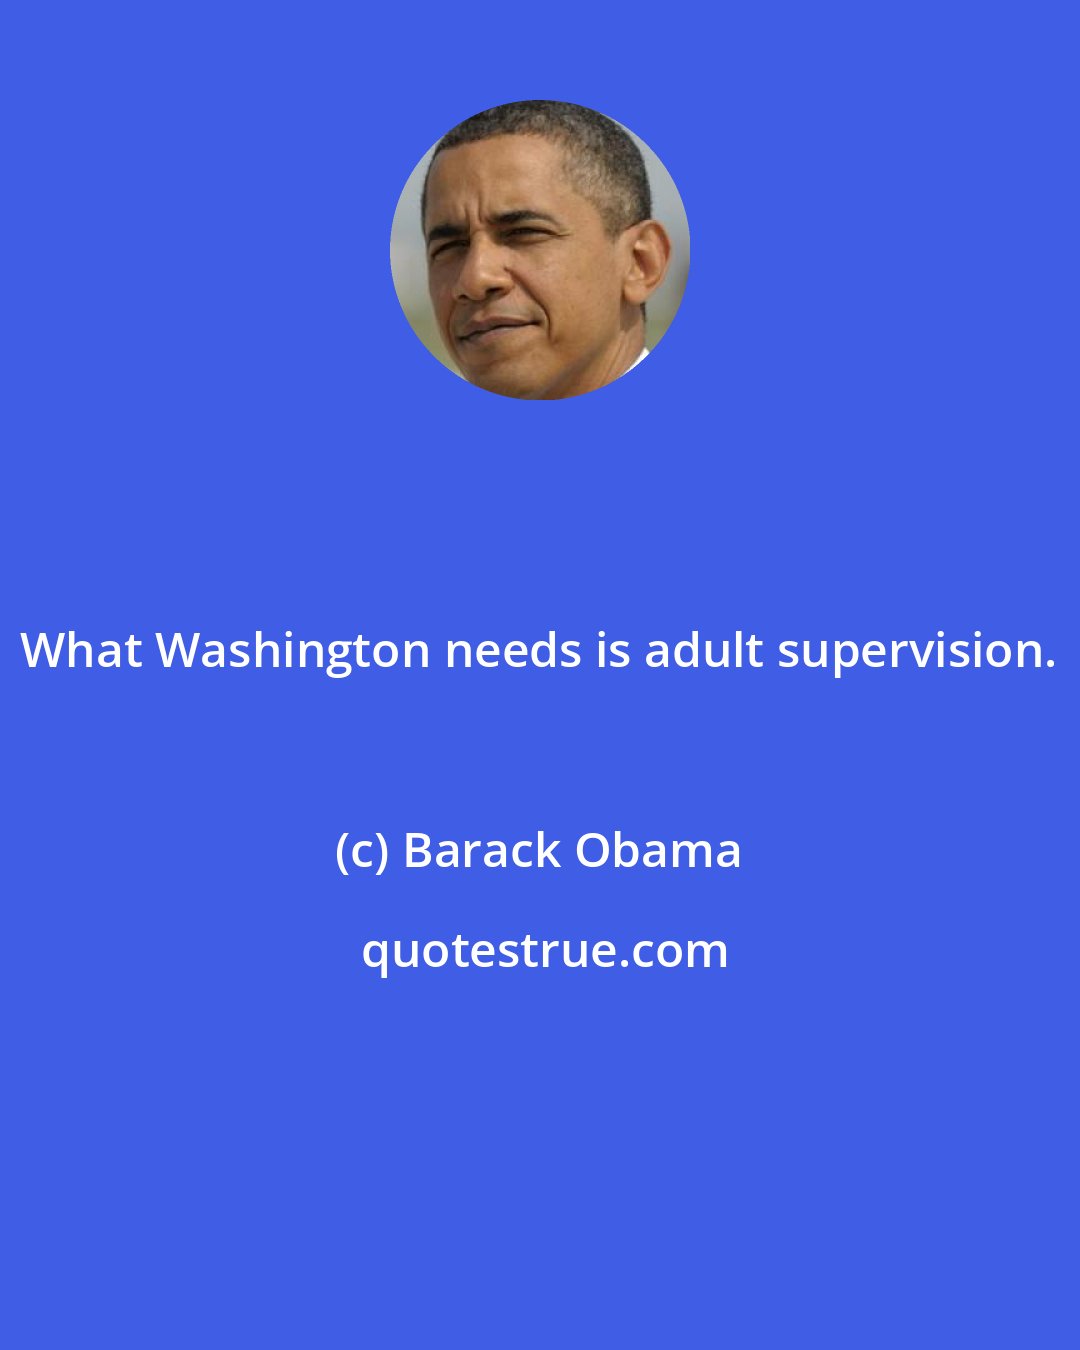 Barack Obama: What Washington needs is adult supervision.